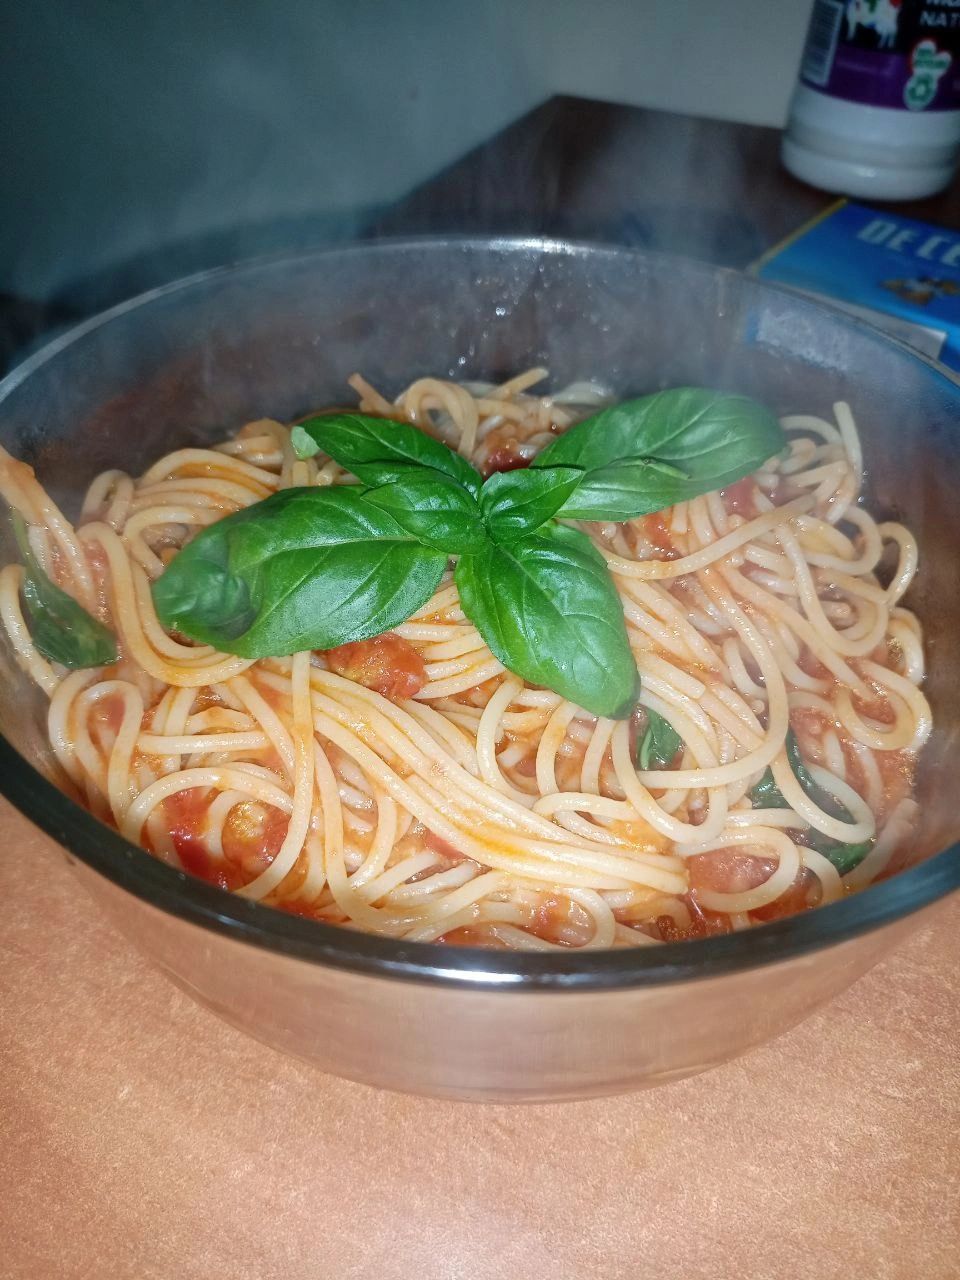 Spaghetti in Tomato Sauce